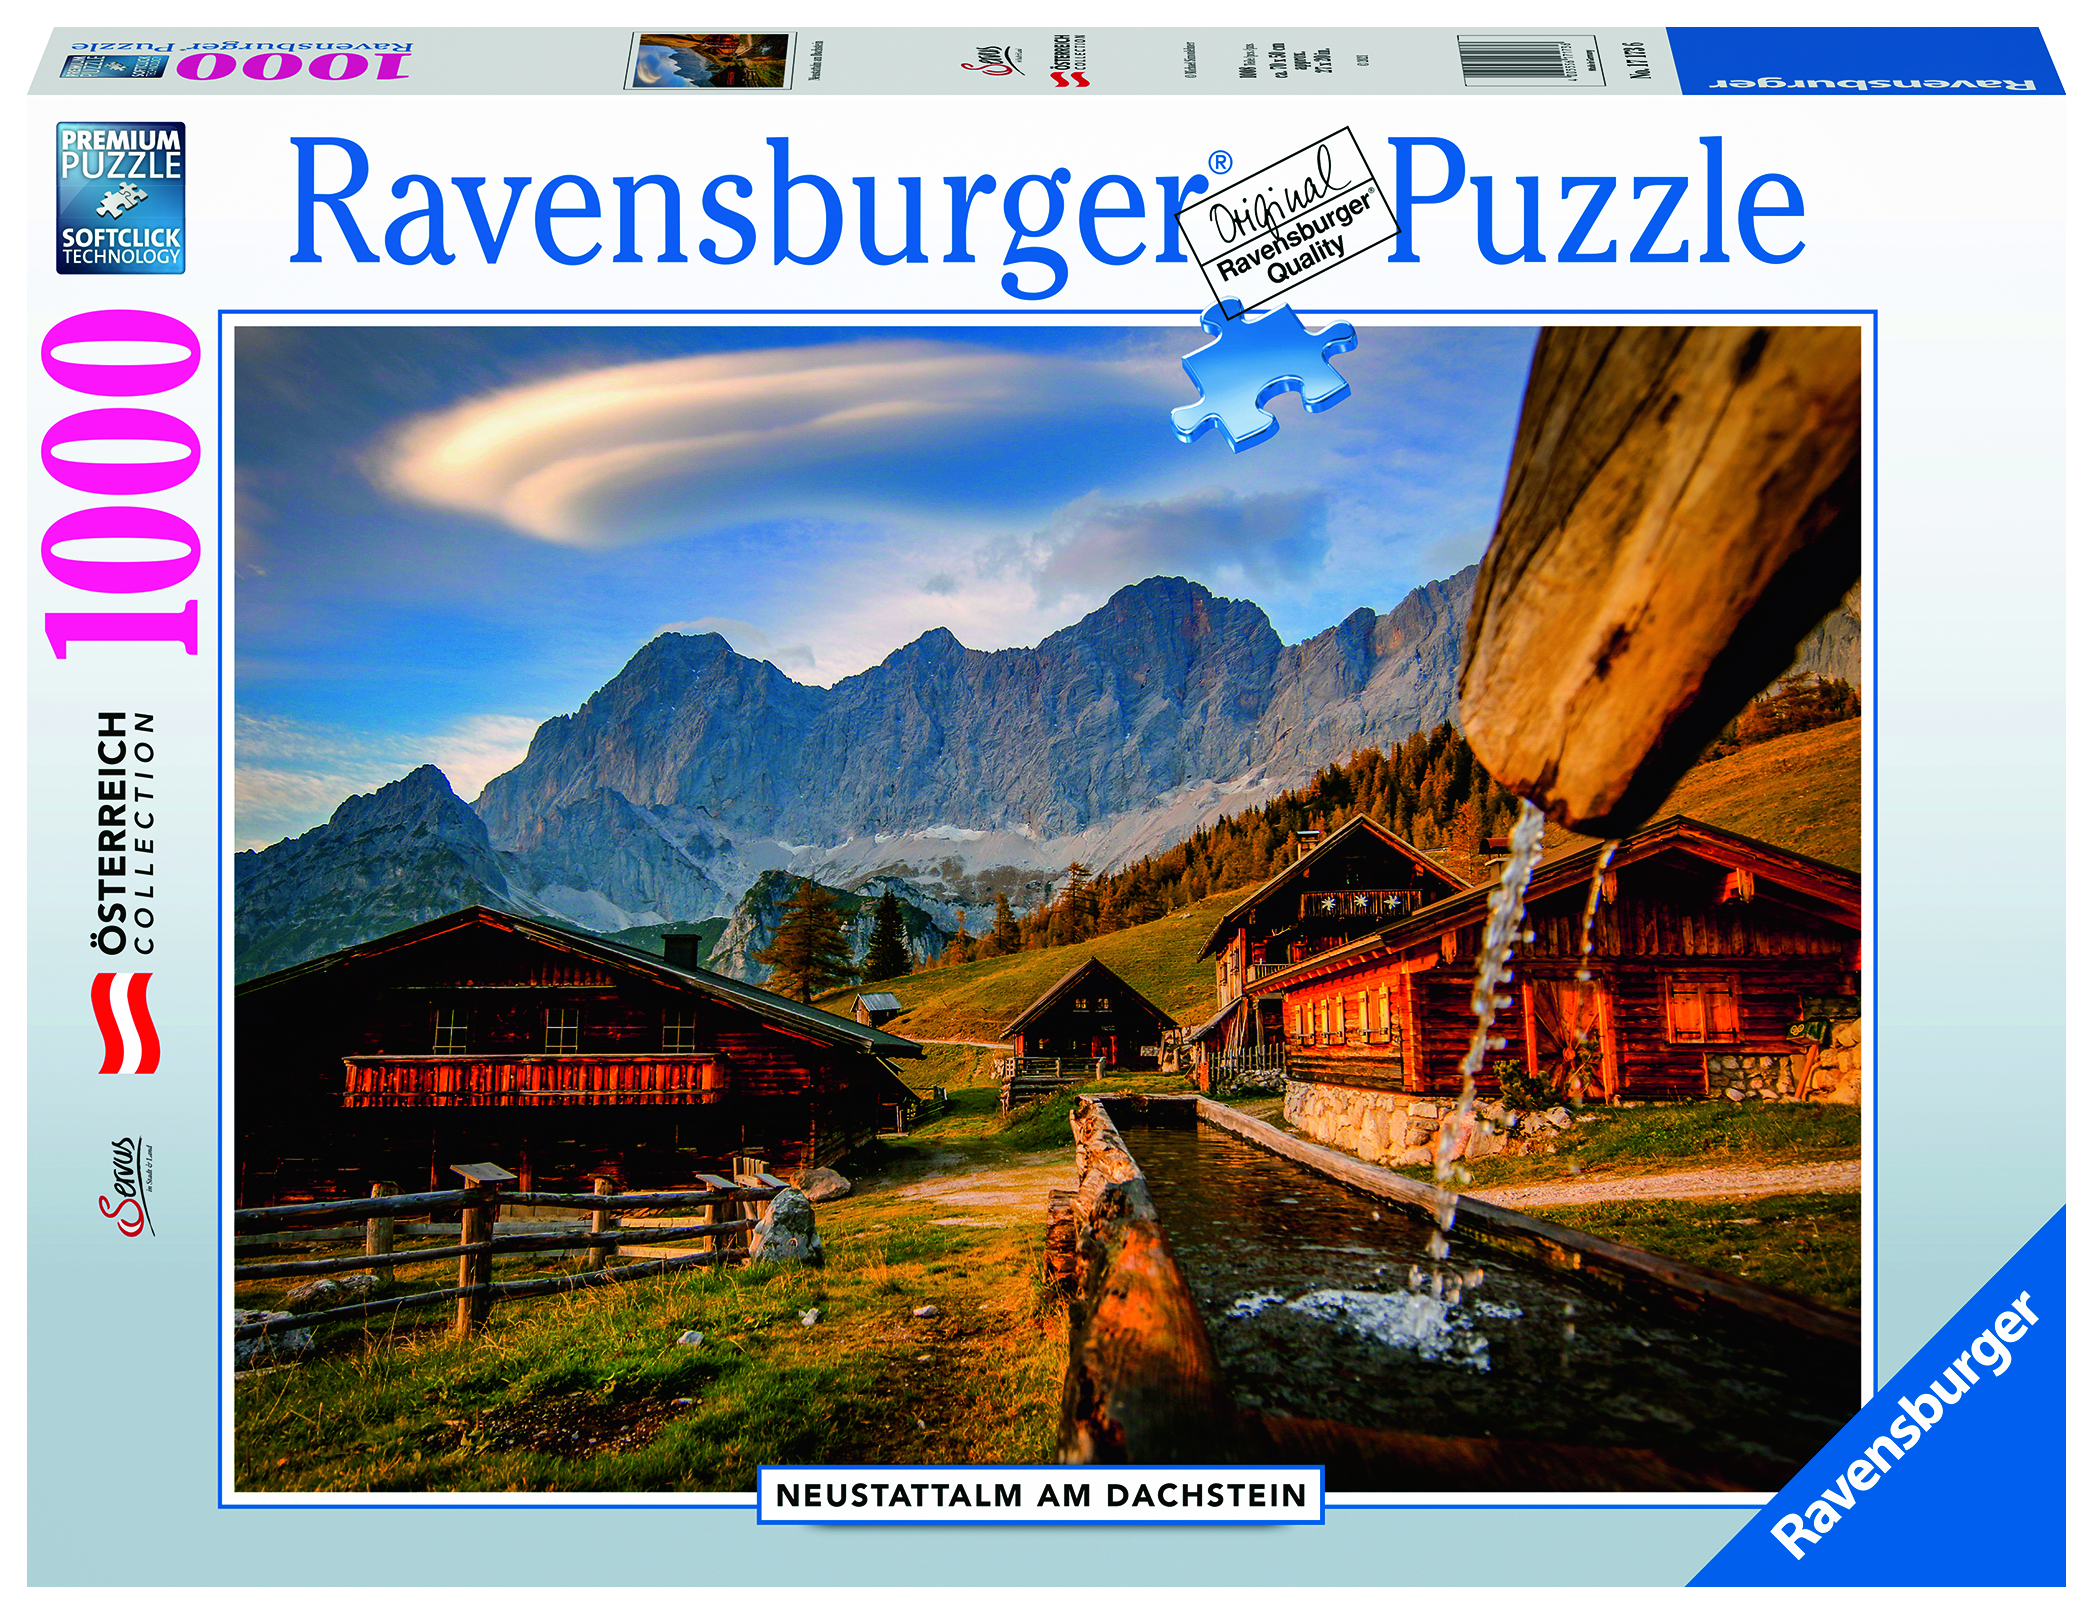 RAVENSBURGER 17173 Neustattalm Dachstein Puzzle am Mehrfarbig